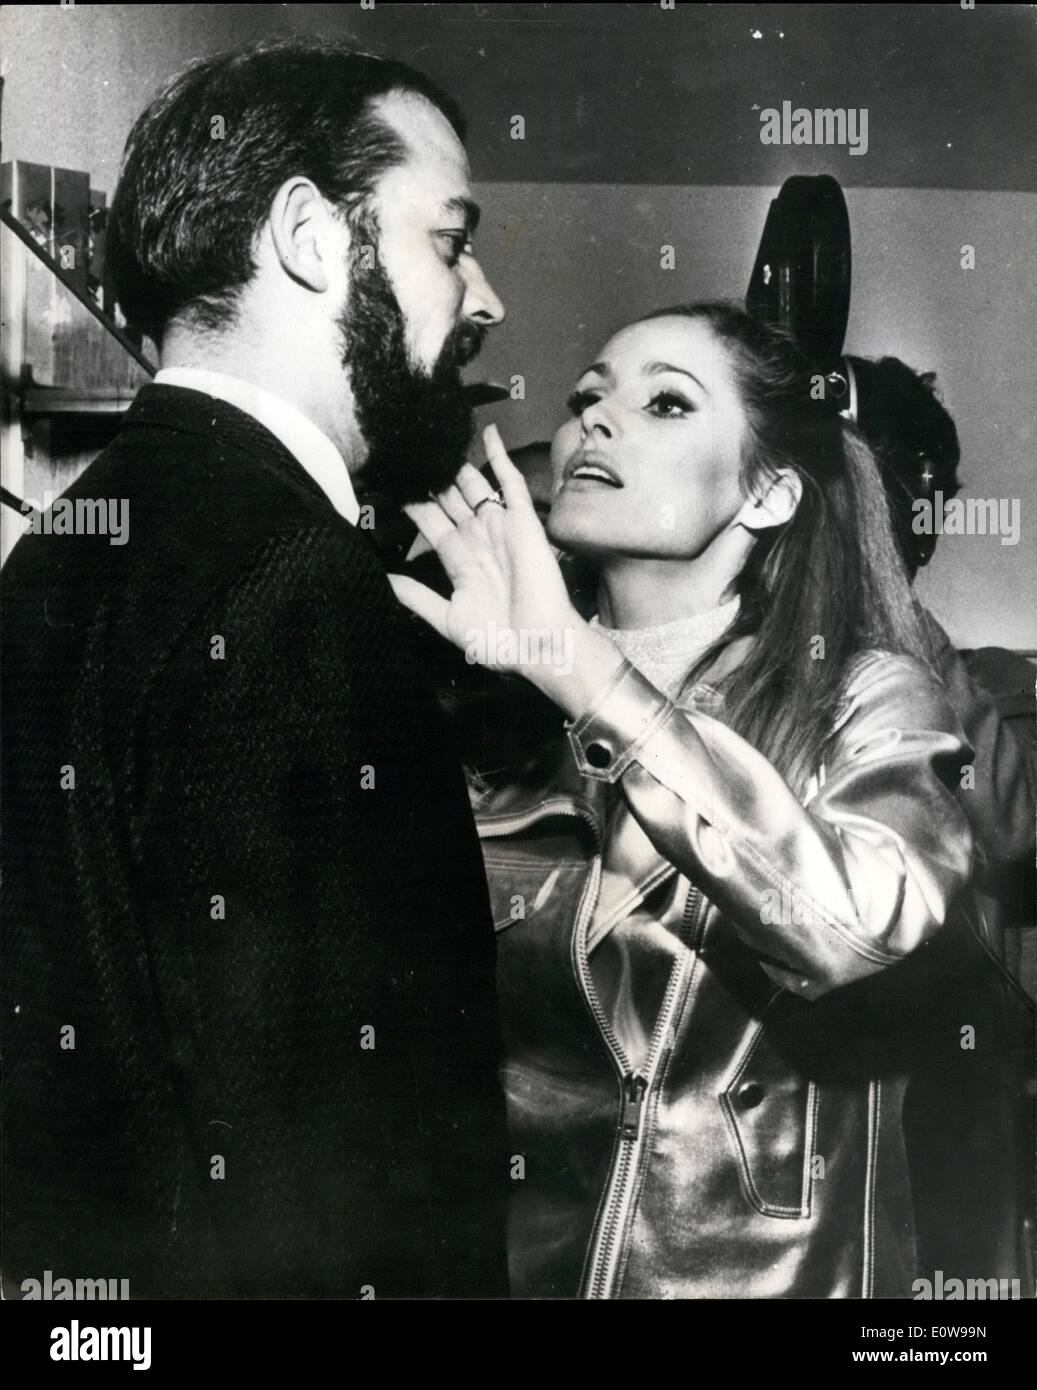 2. Februar 1962 - zufriedene eine Kunde seinen Bart von '' das schönste Mädchen der Welt '' überprüft hat. Schauspielerin Ursula Andress, ein Beauty-Salon für Männer in Bern geöffnet hat, setzt den Abschluss Strich eines Debitors Bart - Glückspilz. Stockfoto